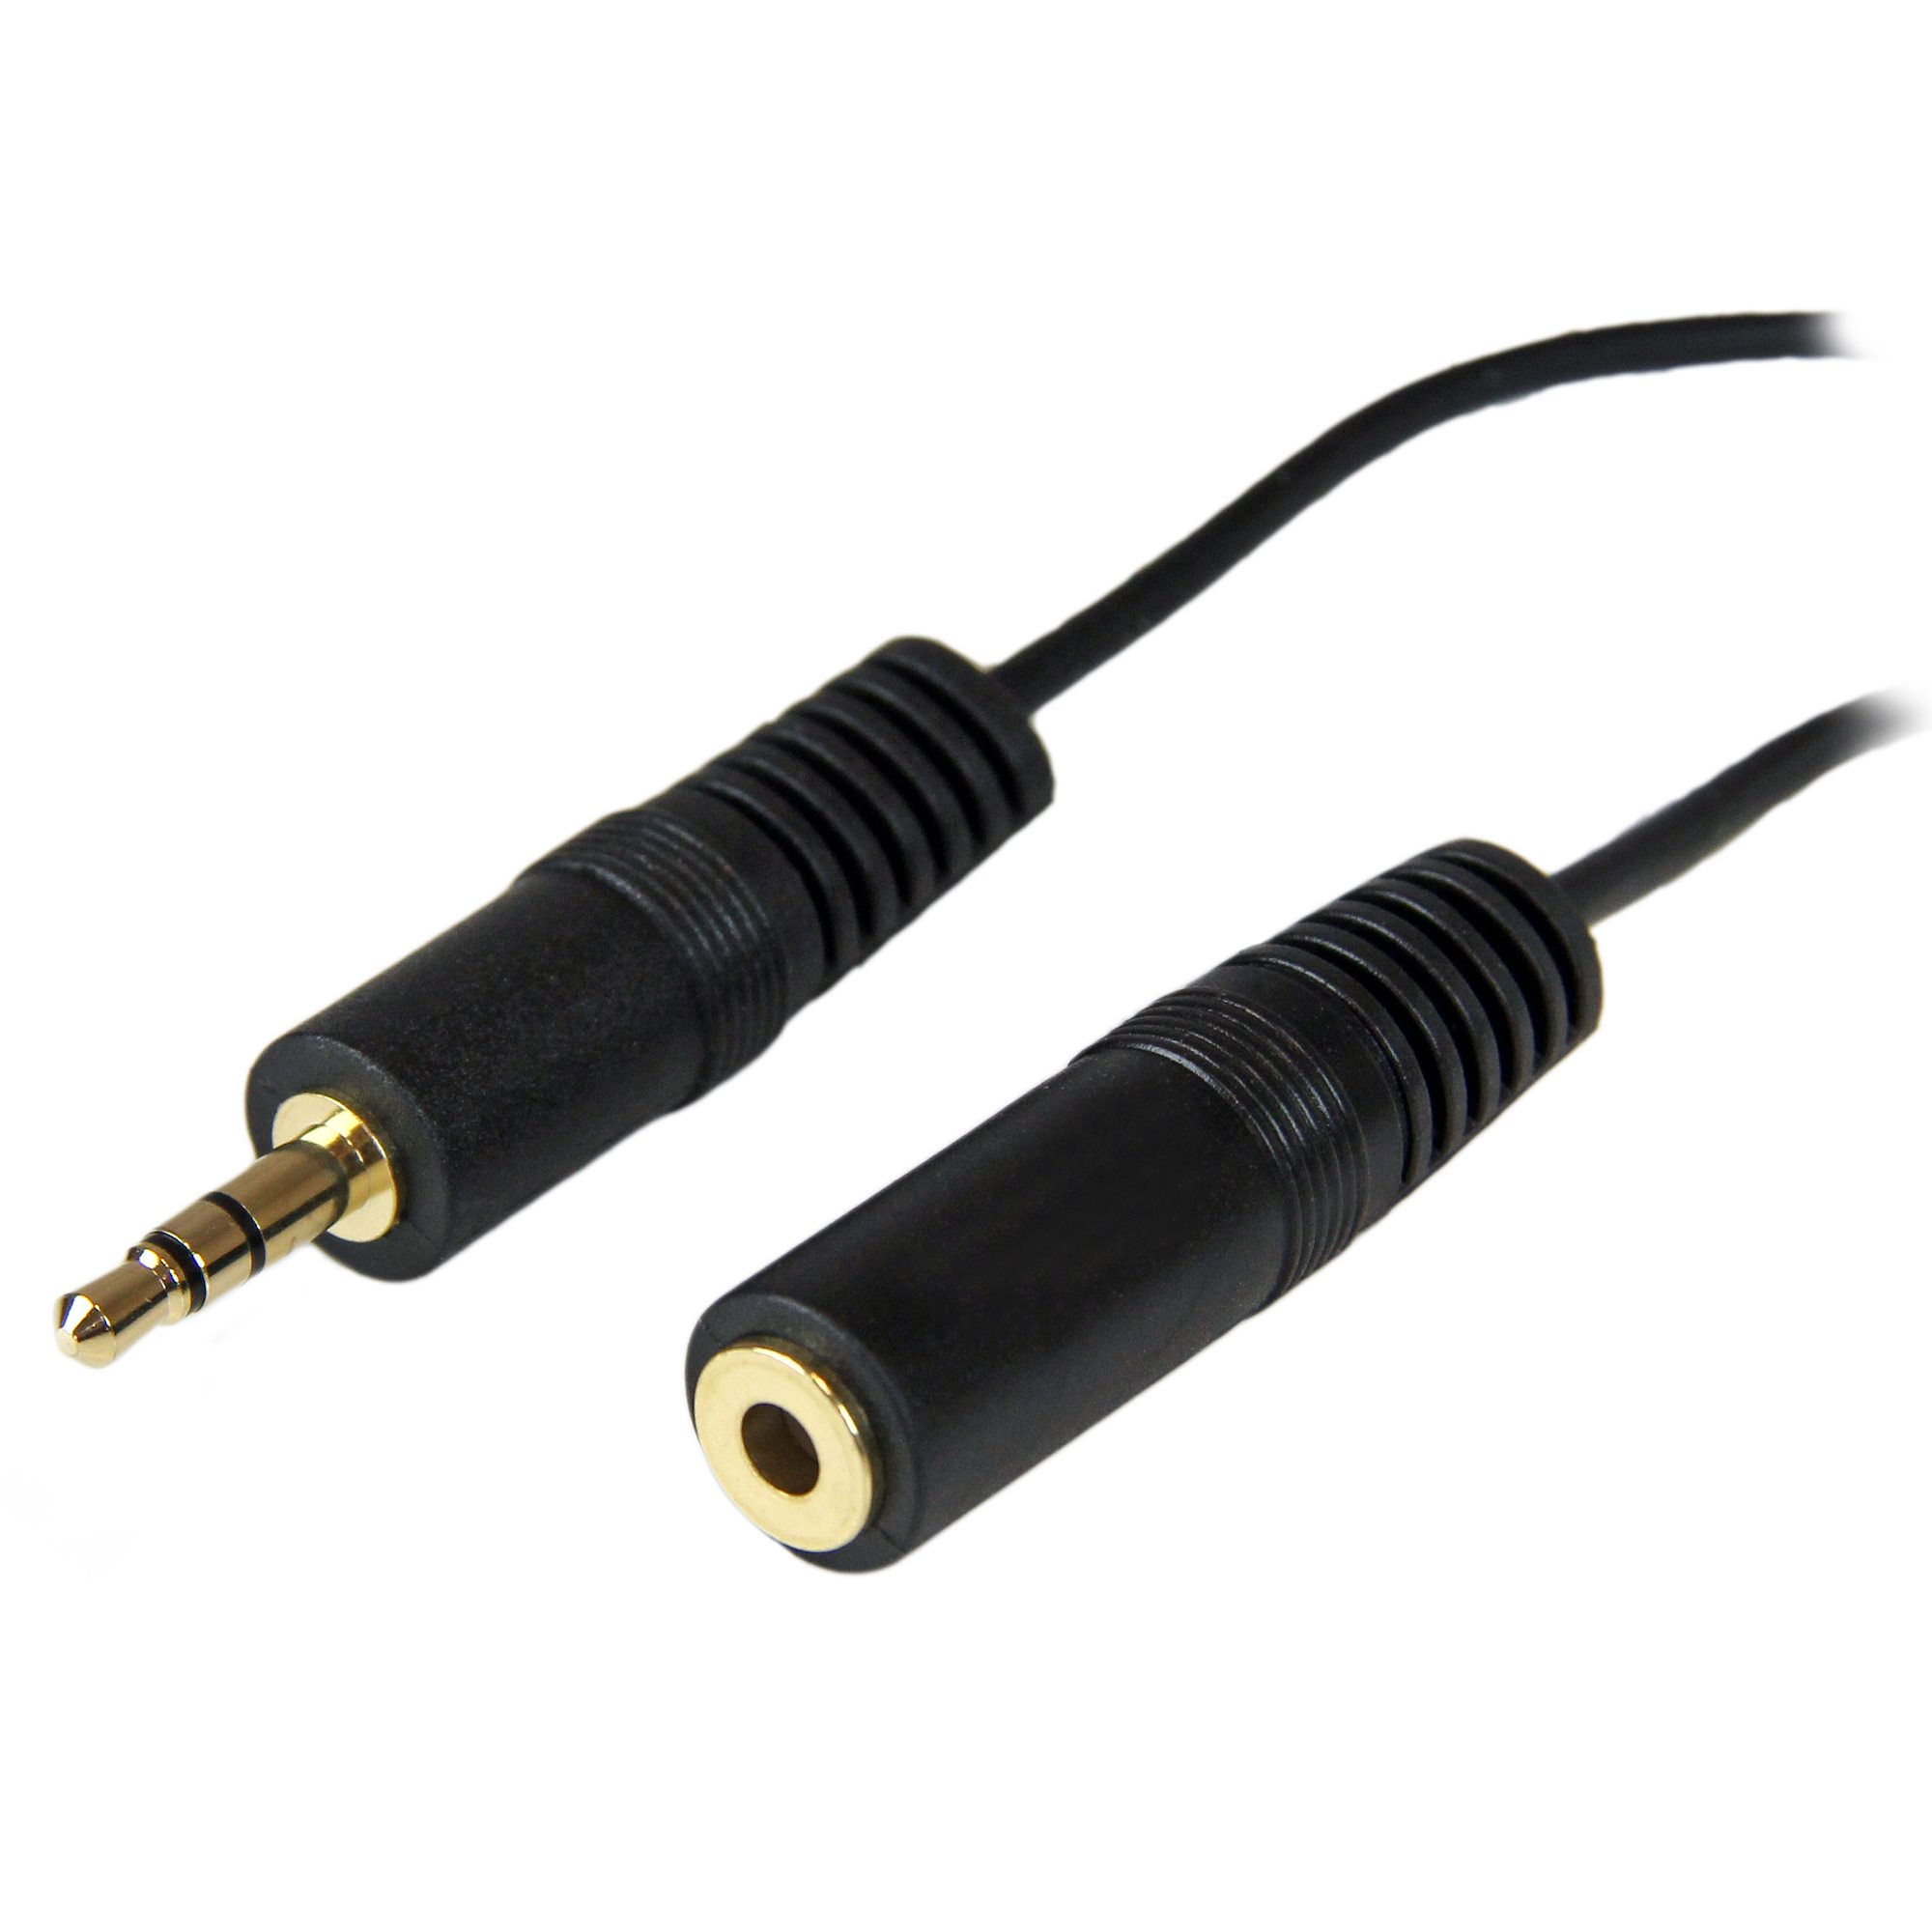 Comprar Cable adaptador mini Jack a Jack convencional - Clip Cord - Cables  - Fuentes, Pedales, Clip Cord, Cables